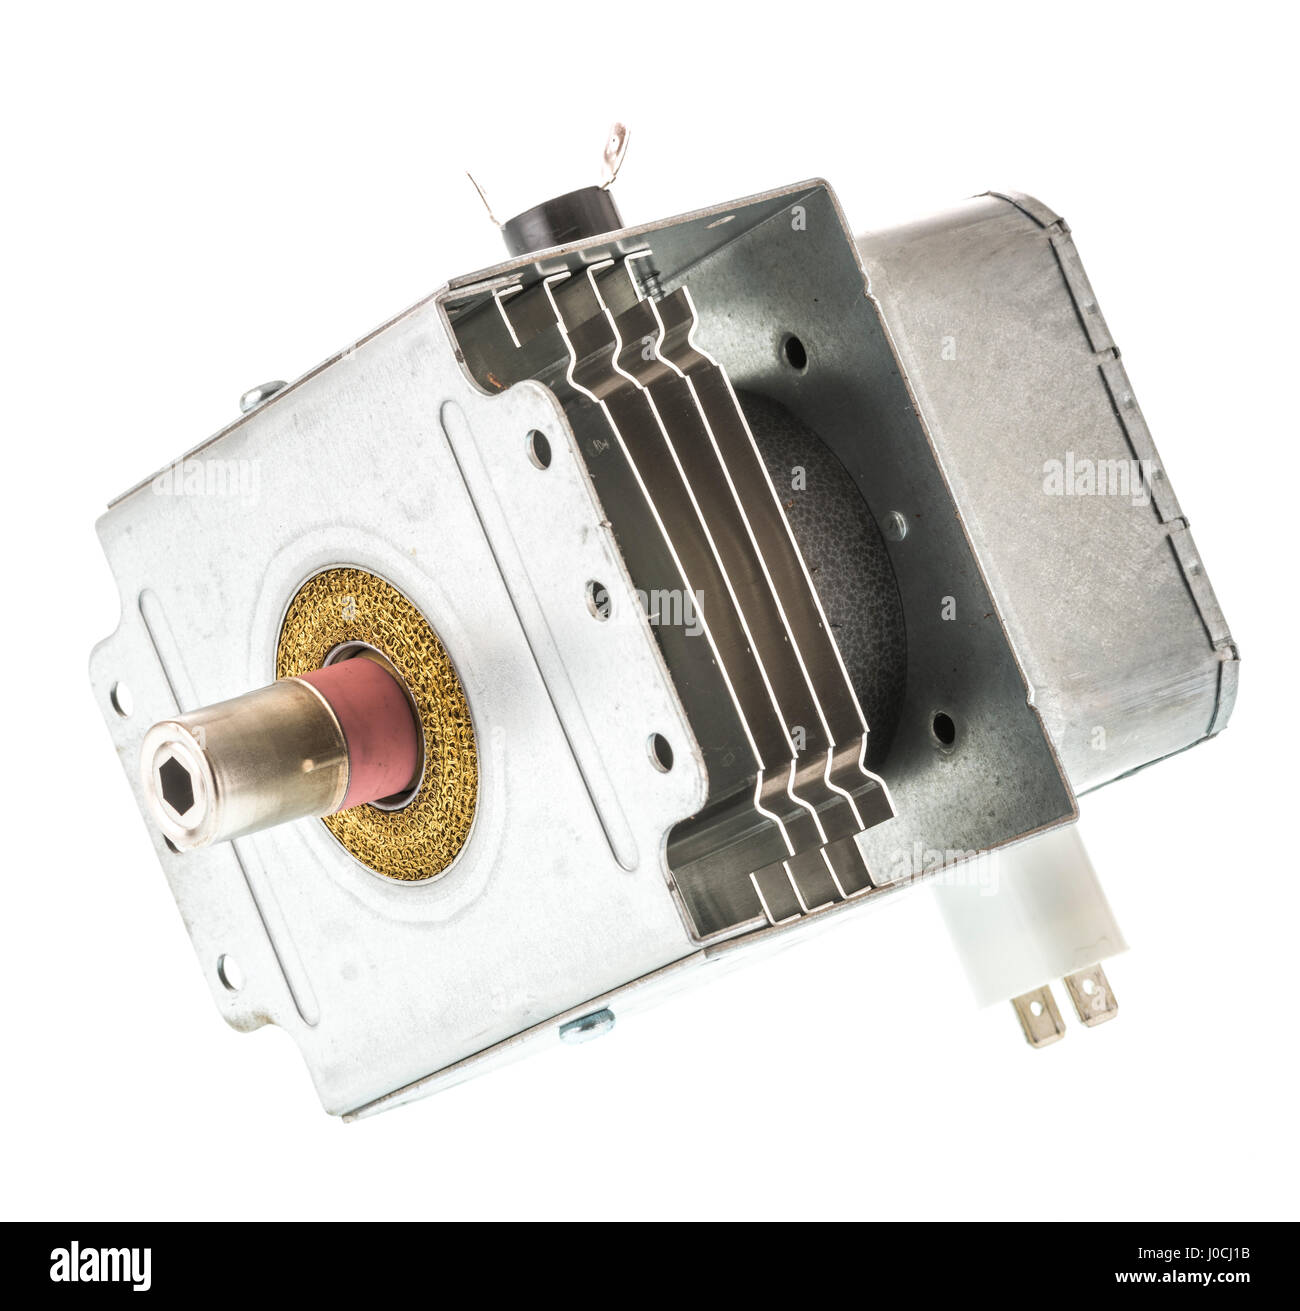 Ein Magnetron aus der Mikrowelle Stockfotografie - Alamy